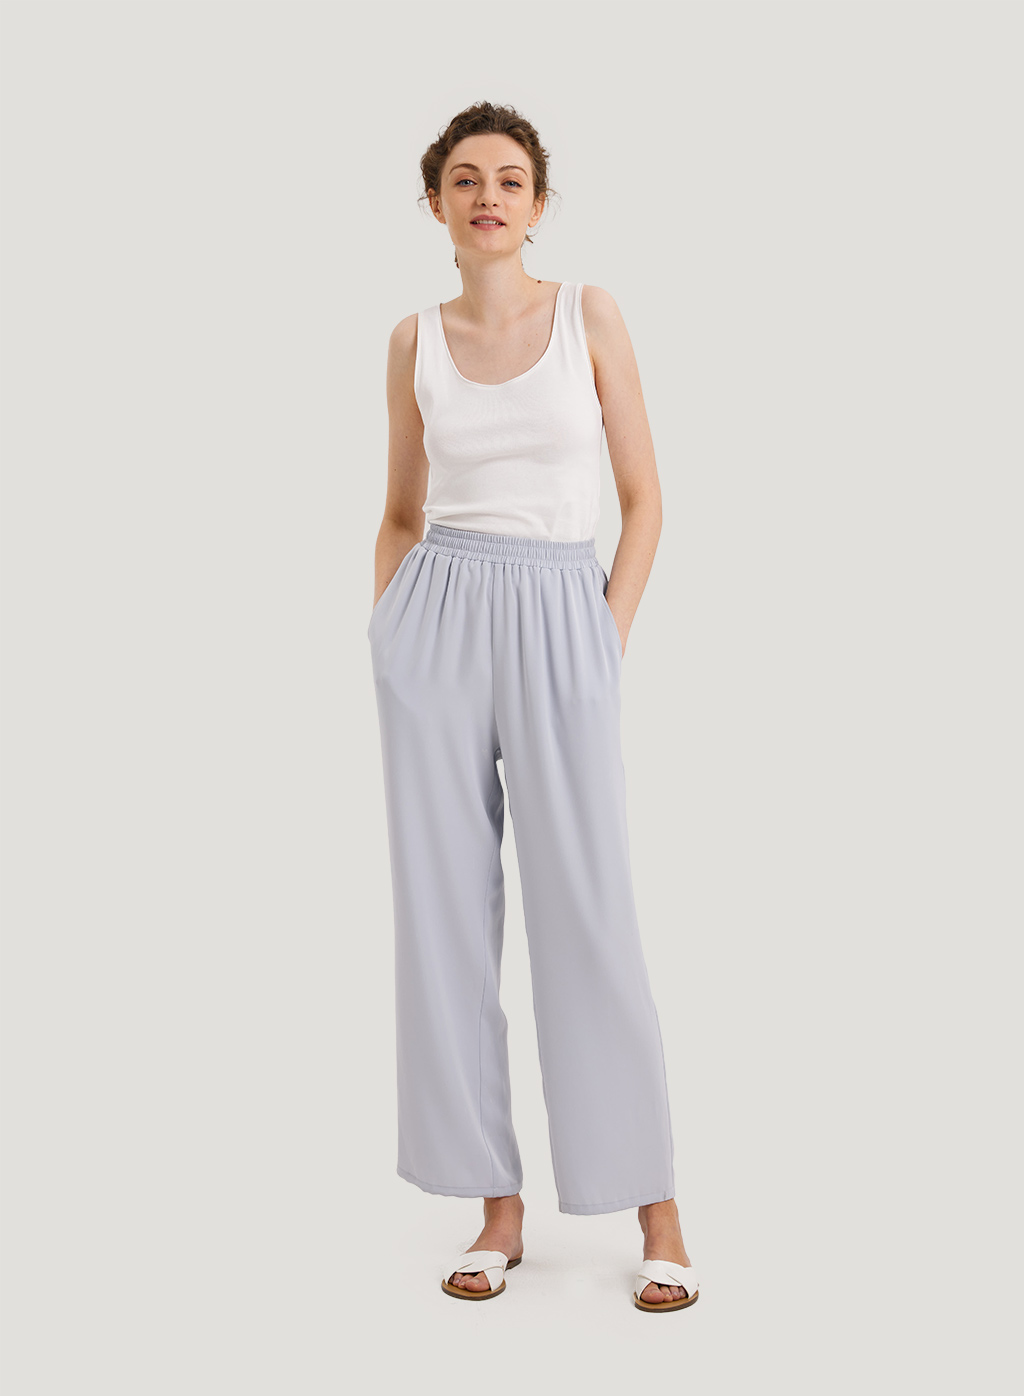 Women's Lounge Pants | Straight Leg Night Pant | Nap Loungewear